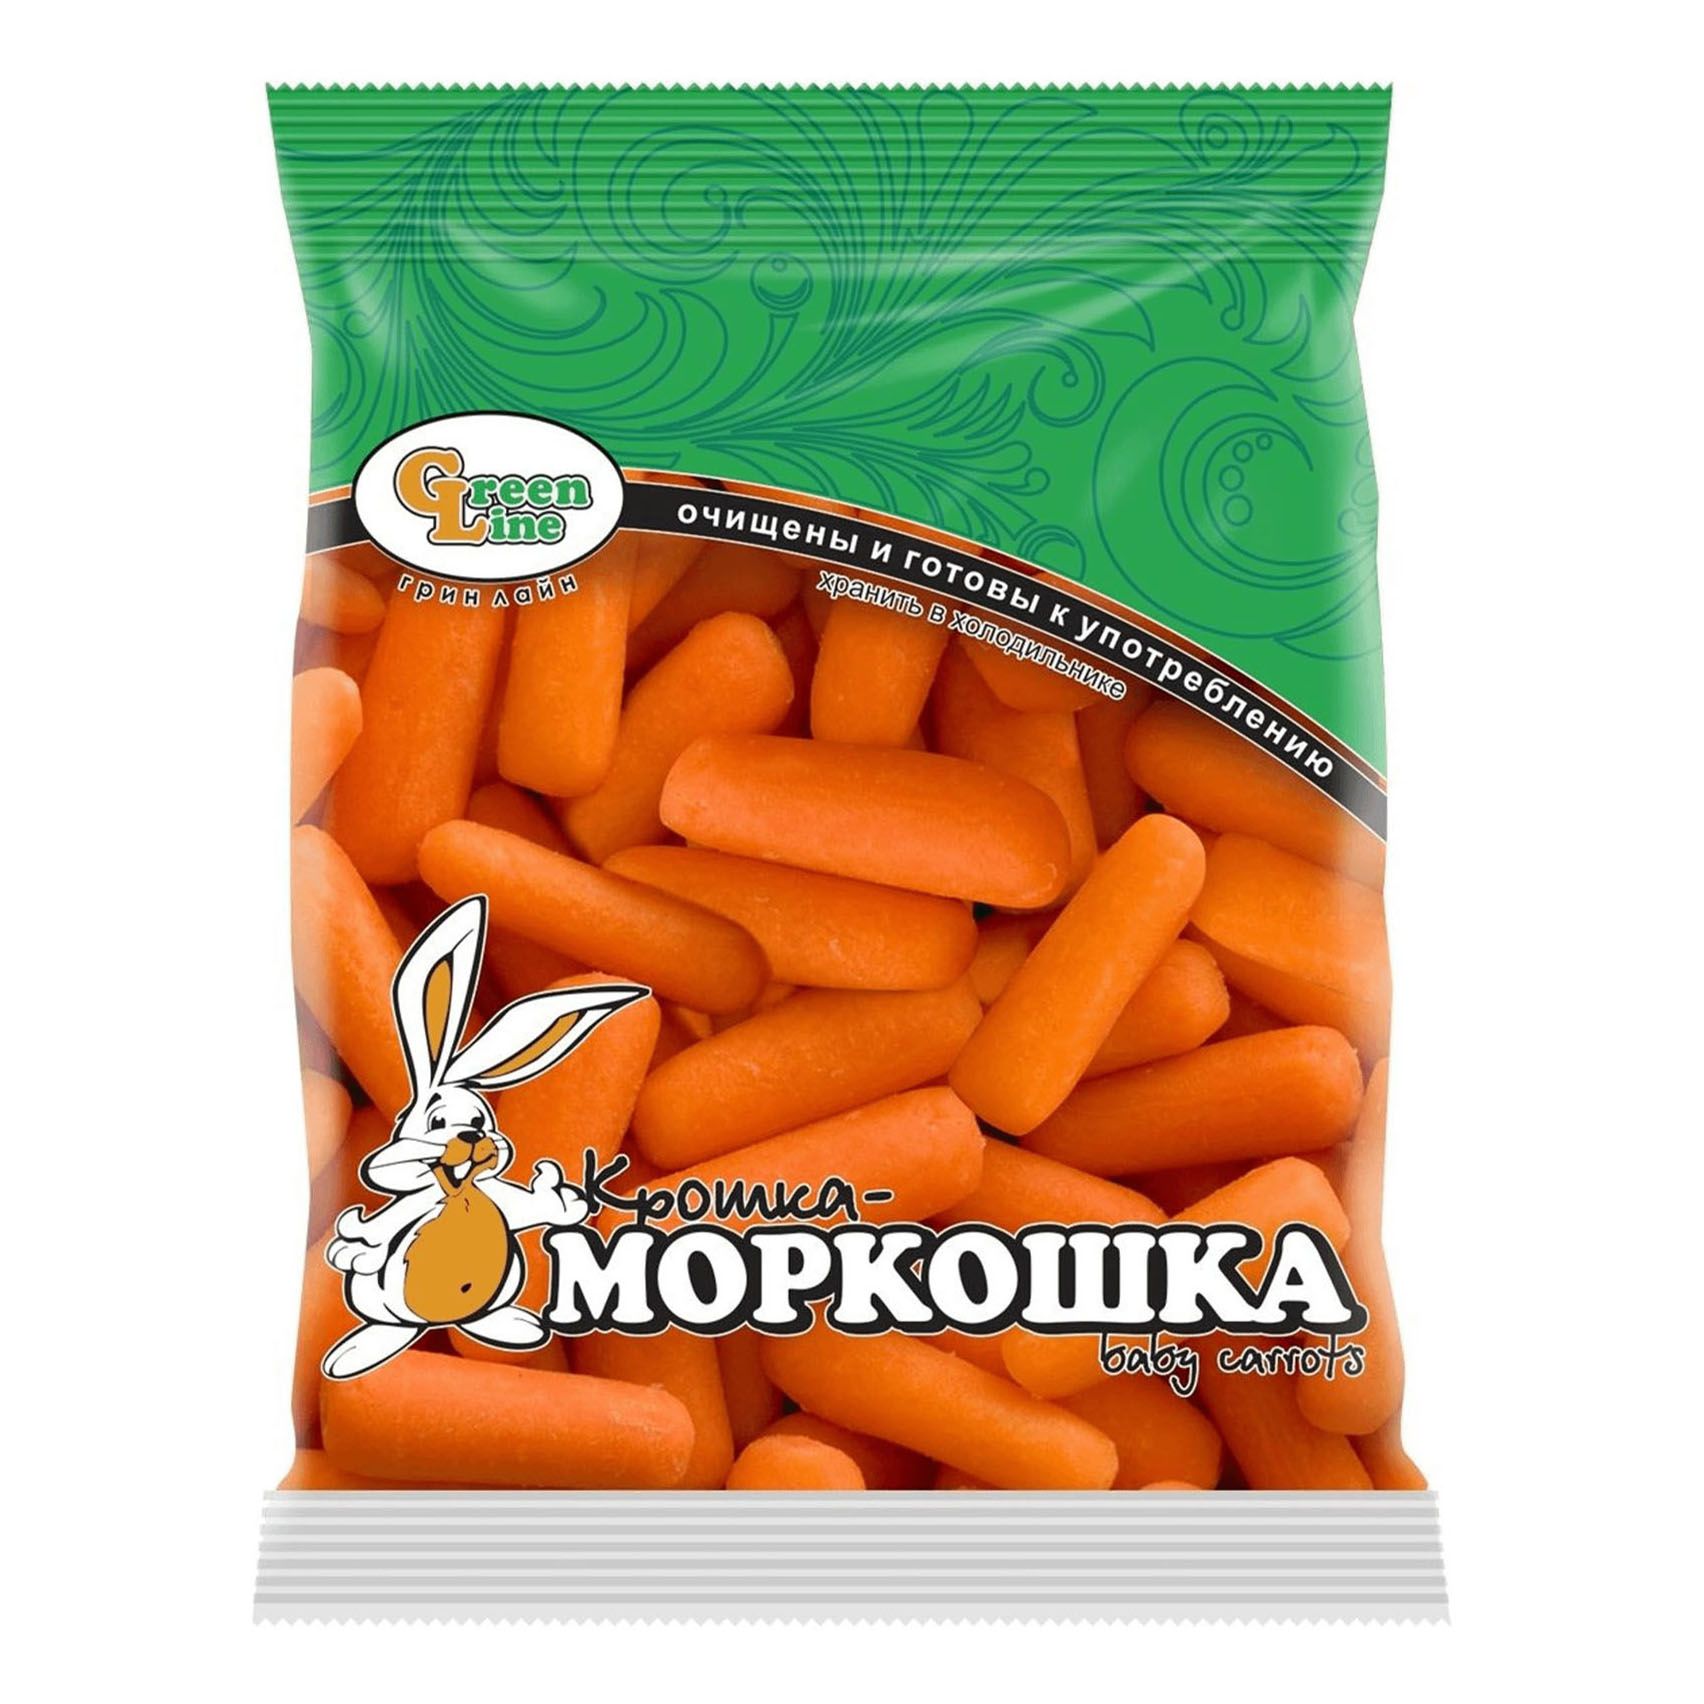 Мытая крошка. Морковь снэк мини, 250г. Крошка моркошка. Морковь мини Моркоша 450г. Замороженная маленькая морковка.